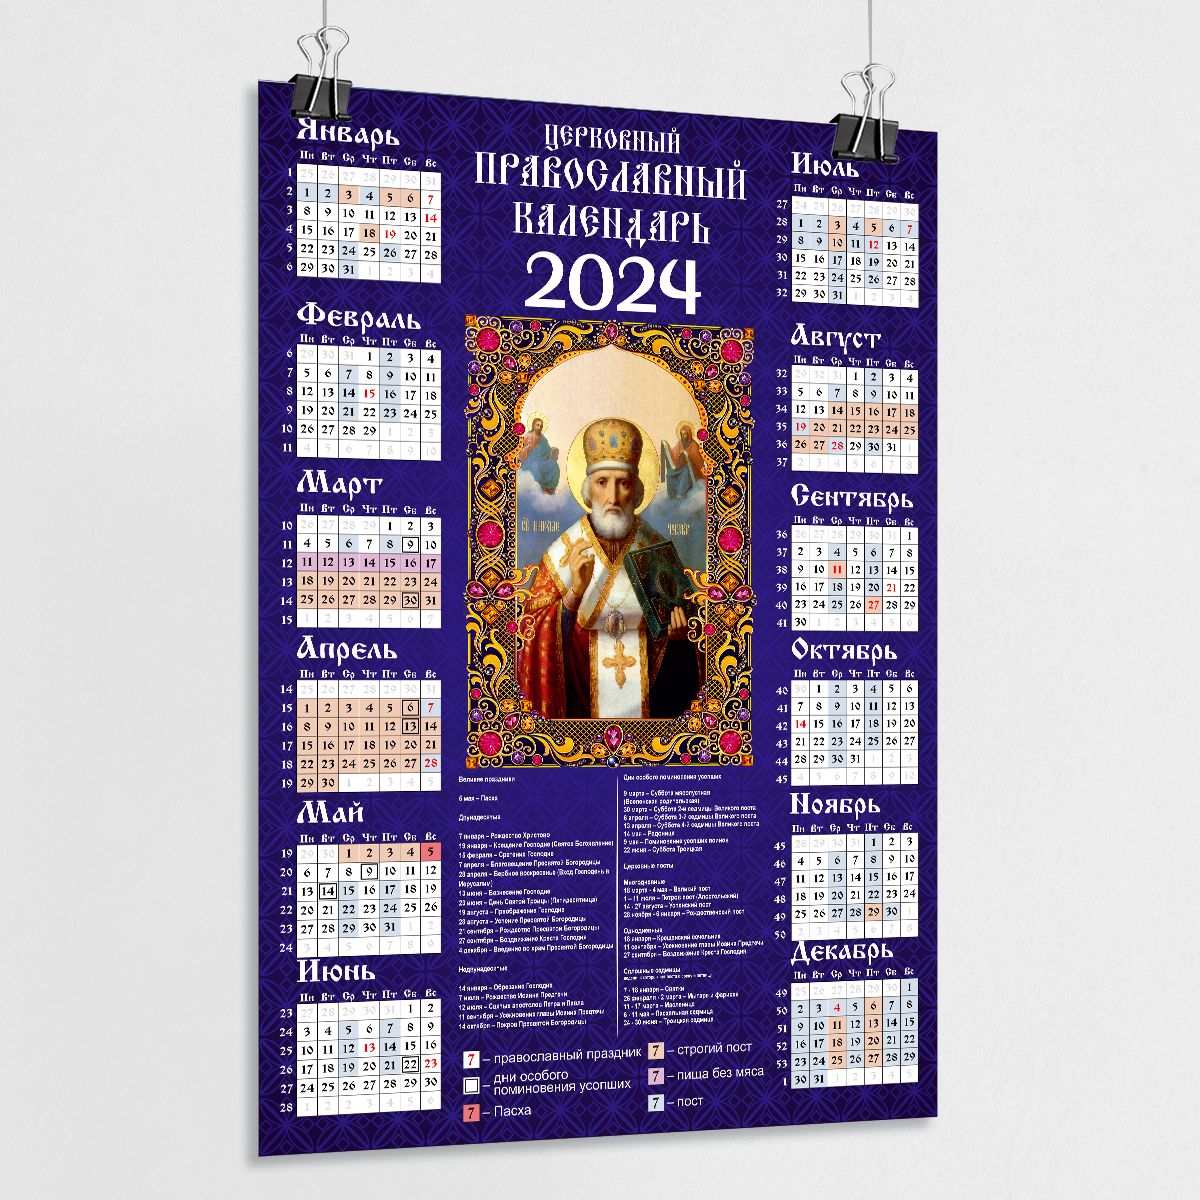 16 апреля 2024 православный праздник. Церковный календарь на 2024 православный. Православный календарь на 2024 год. Православный календарь на 2023. Православный календарь настенный 2024.